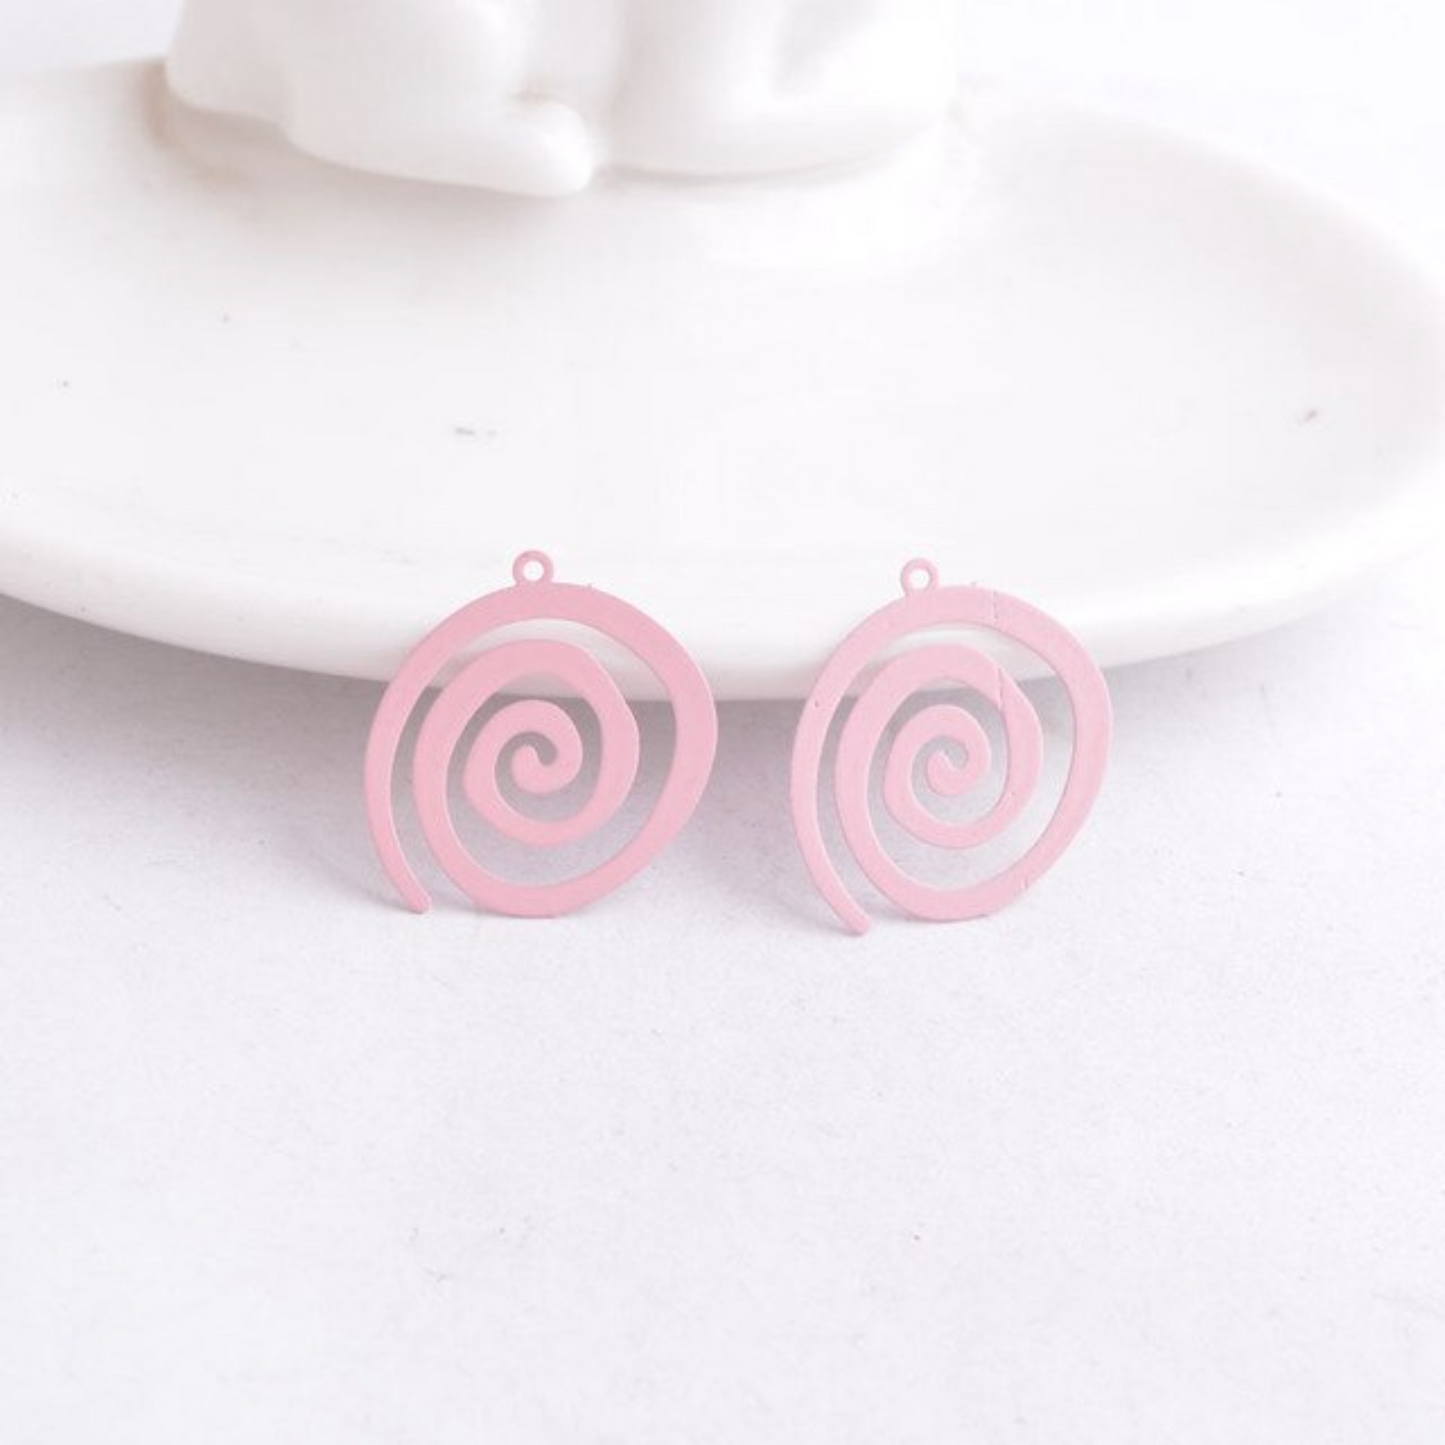 Snail Swirl Earring Charm - 2ea (1 pair)